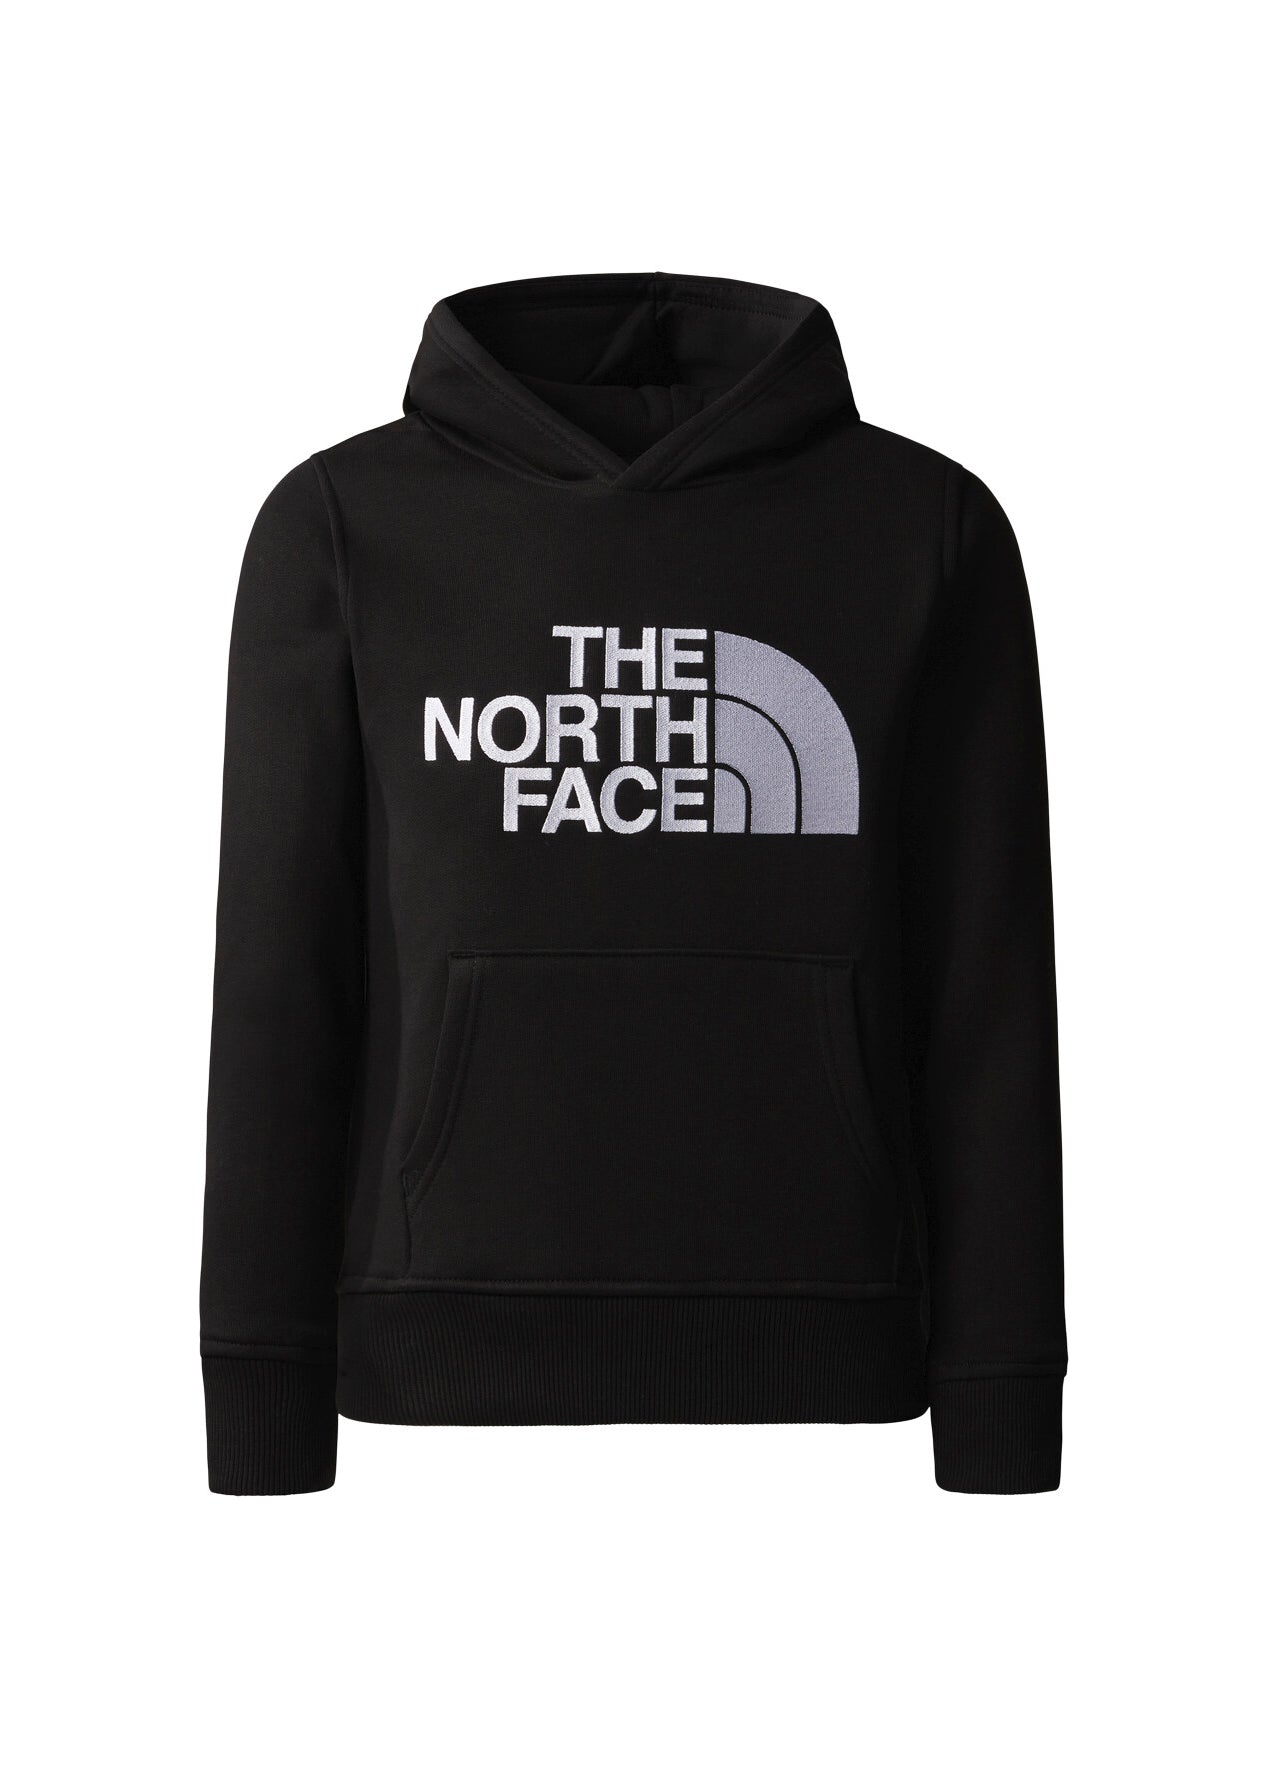 The North Face Kids Felpa con Cappuccio Nera con Stampa Logo